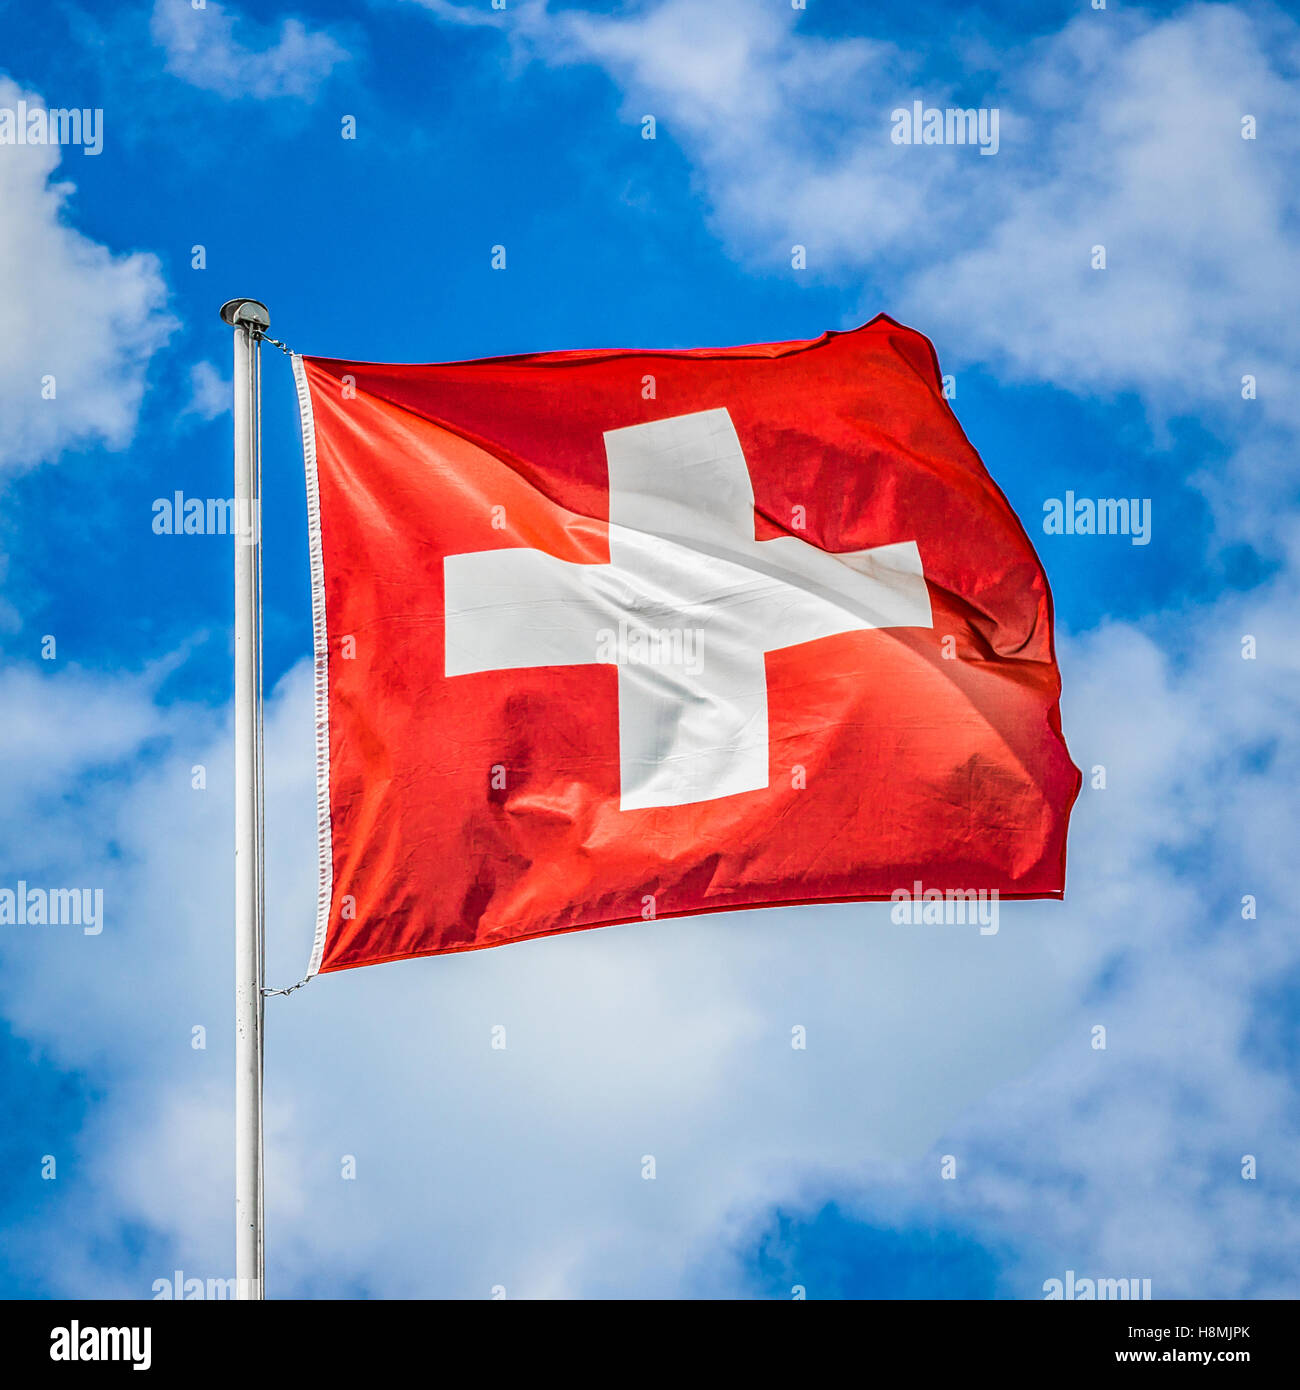 L'affichage classique du drapeau national de la Suisse s'agitant dans le vent contre un ciel bleu avec des nuages sur une journée ensoleillée Banque D'Images